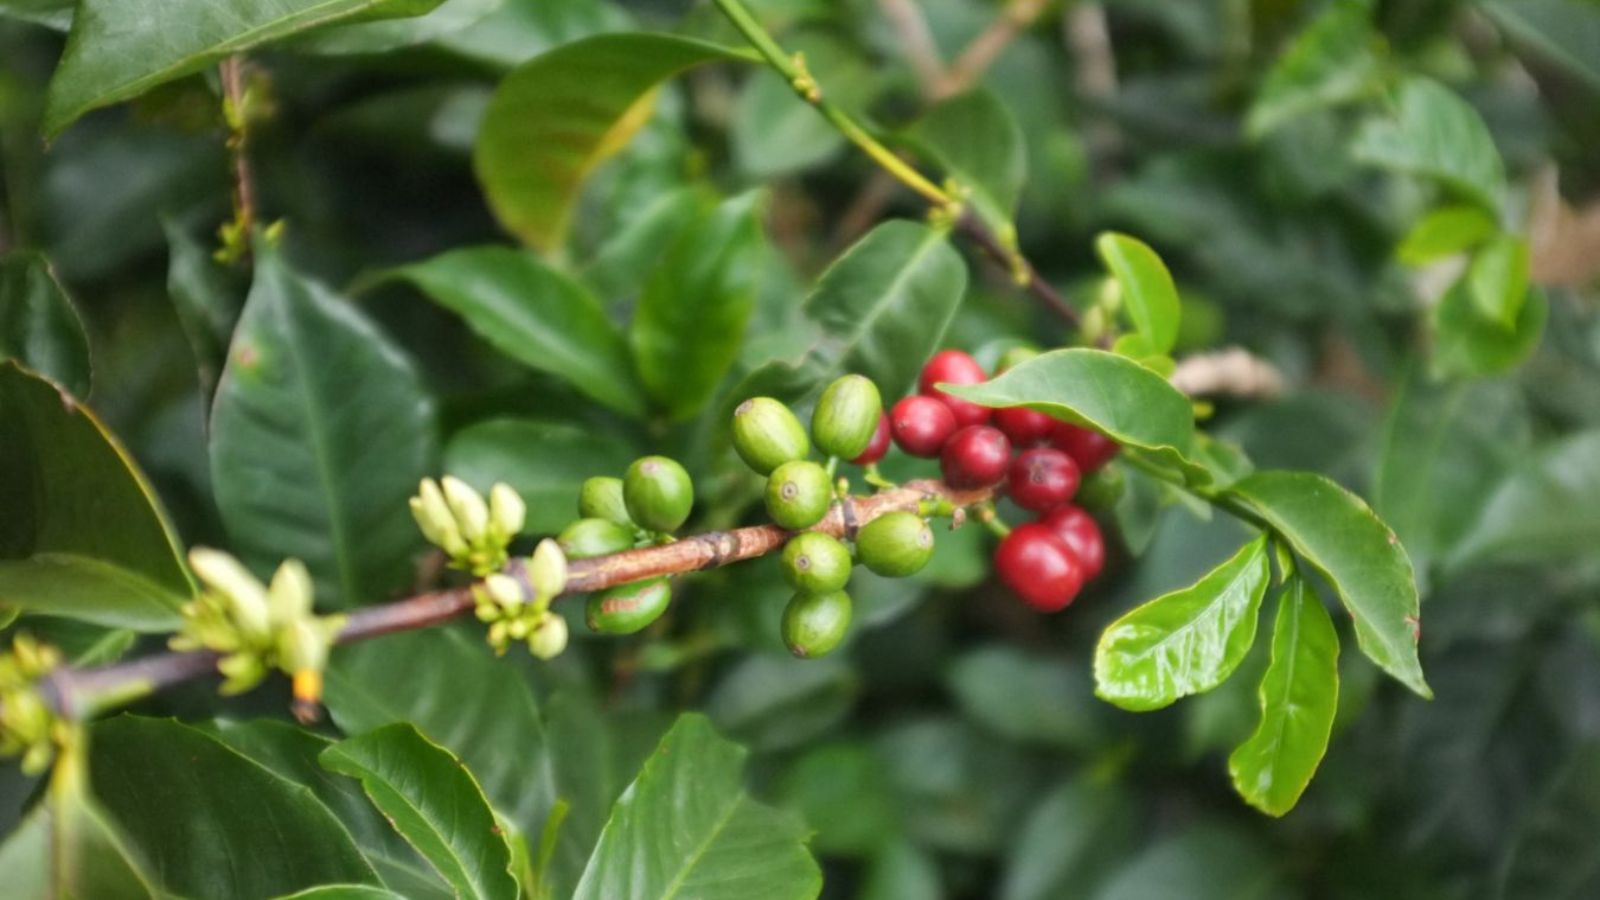 trái cà phê typica trên cây cà phê